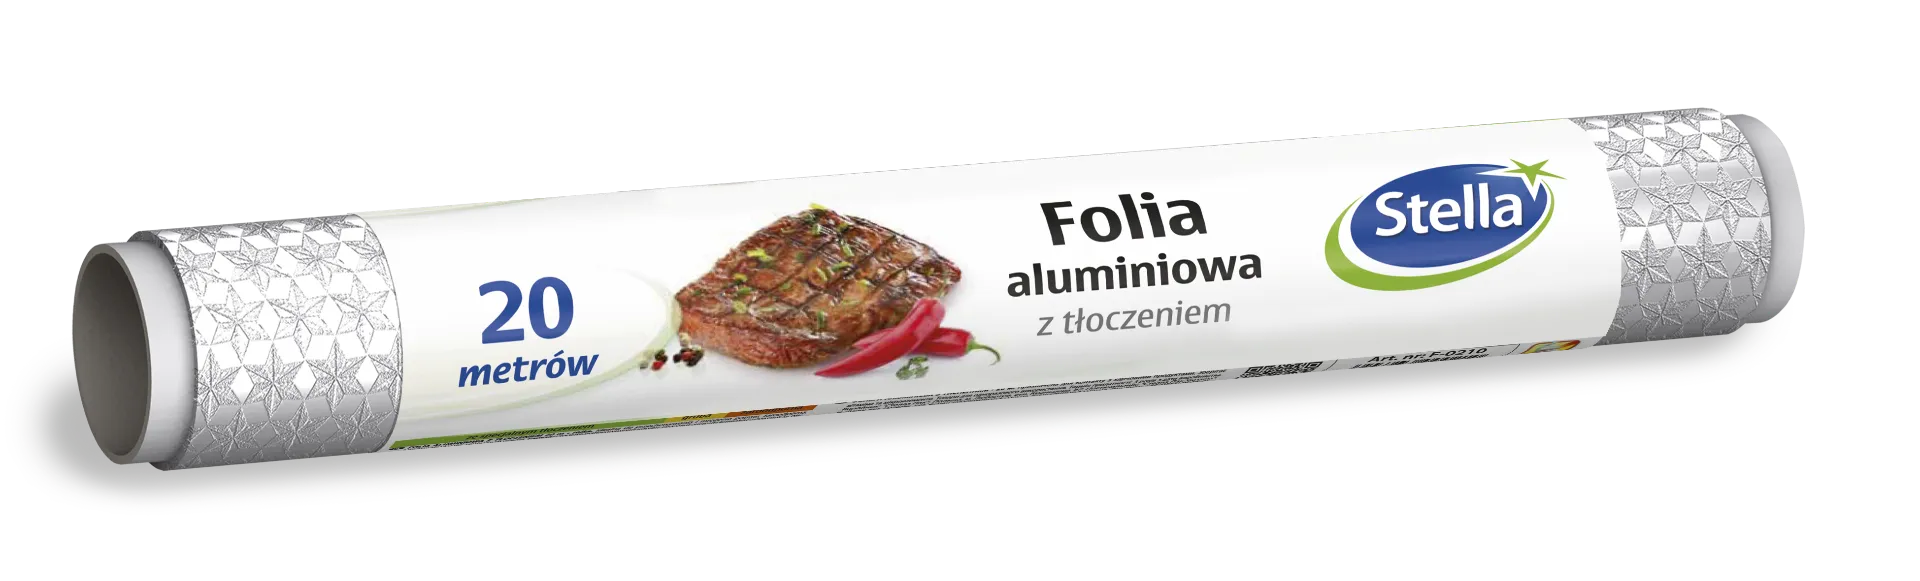 Stella Folia aluminiowa z tłoczeniem, 1 szt.